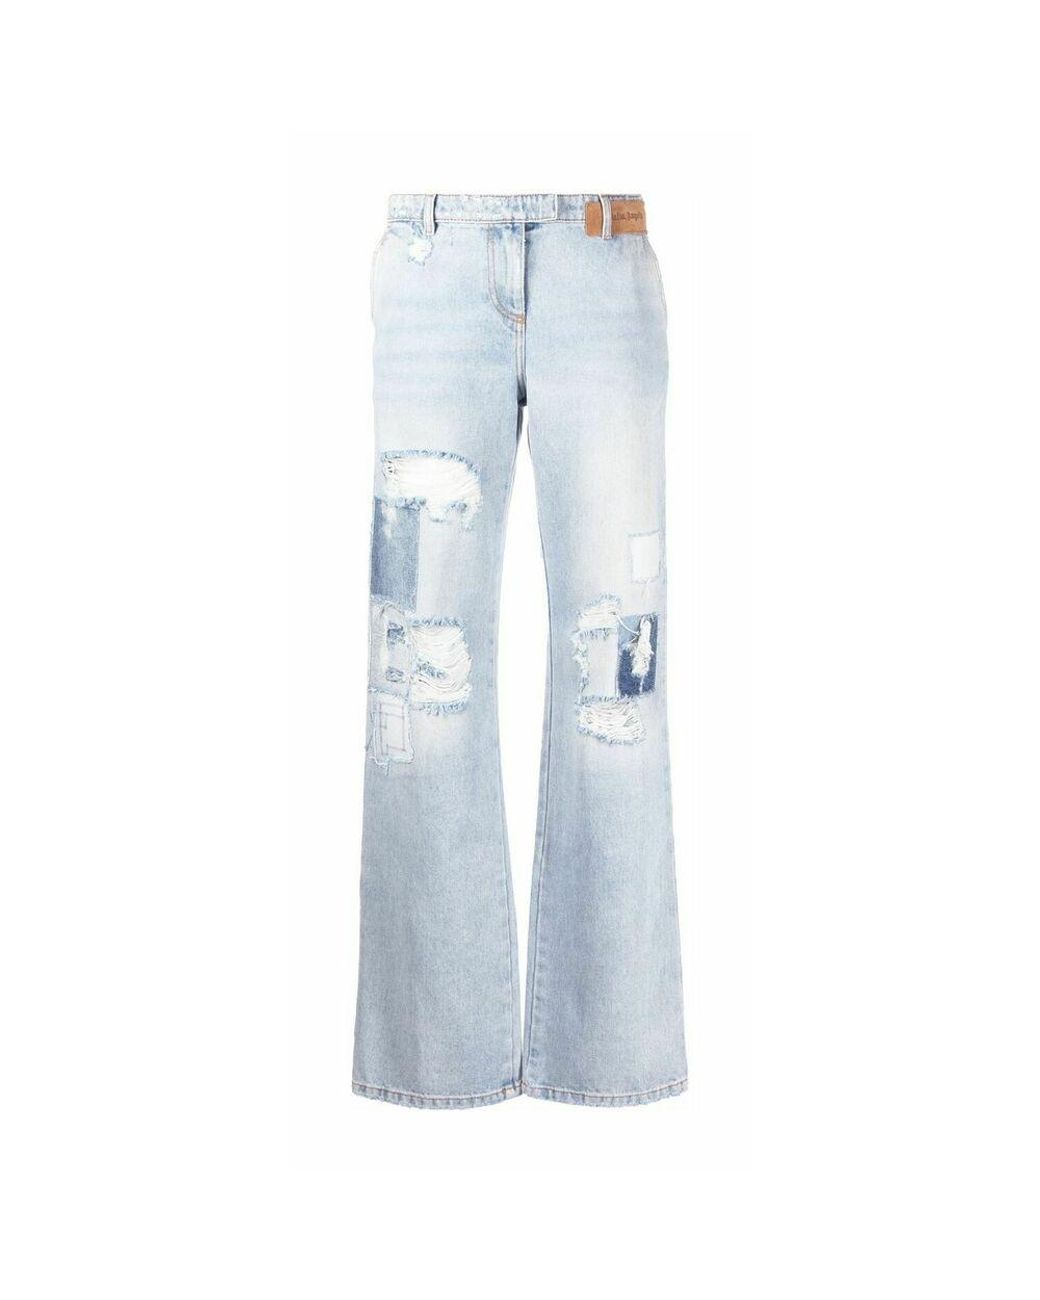 Palm Angels Denim Andere materialien jeans in Blau Damen Bekleidung Strumpfware 